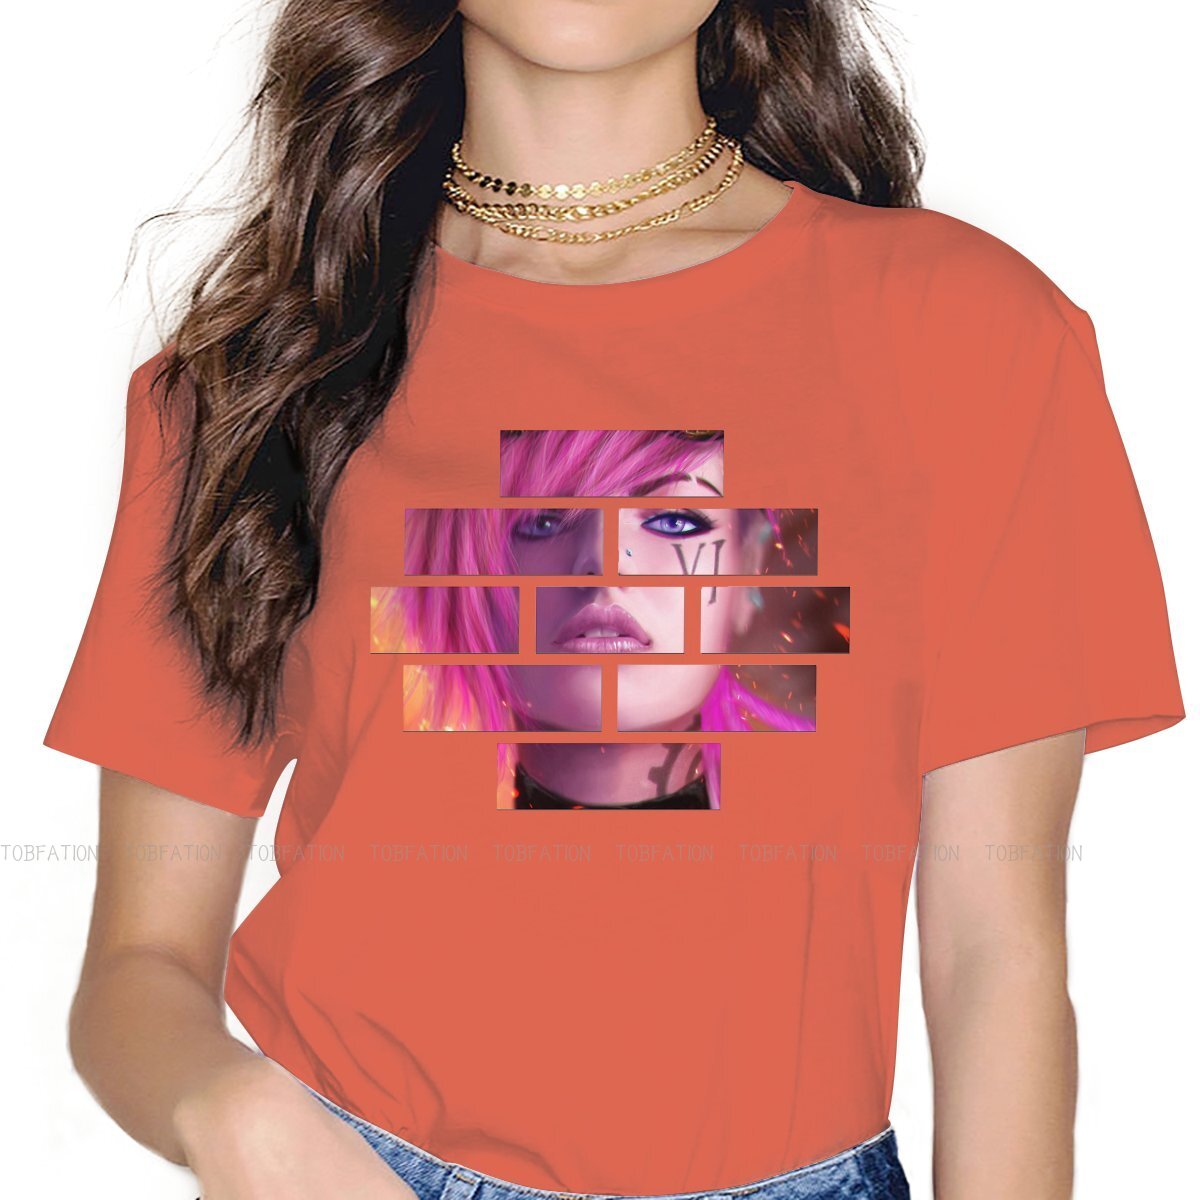 Enforcer Vi The Piltover T-Shirt - League of Legends Fan Store